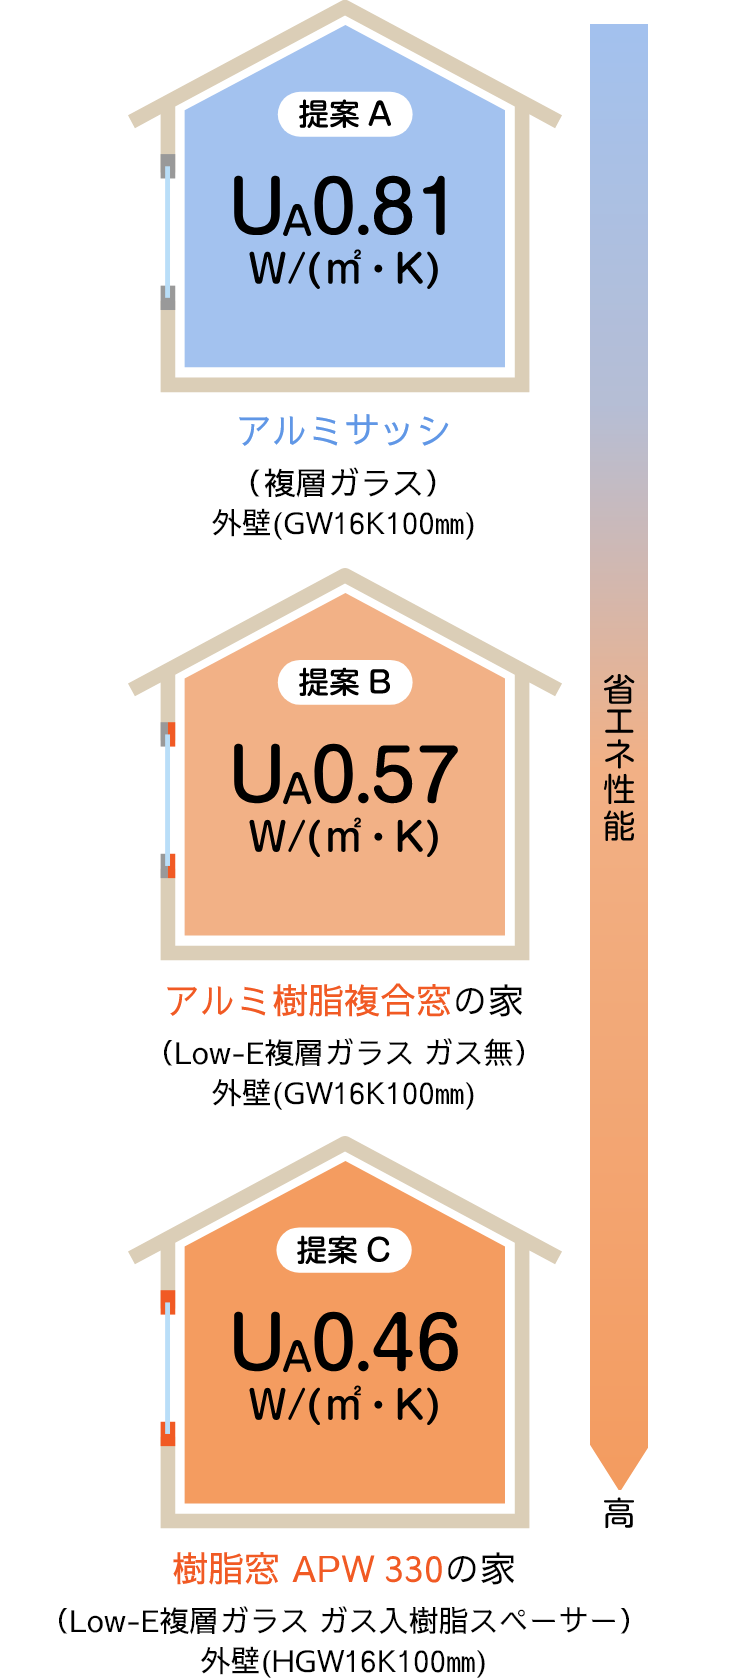 提案A：アルミサッシ（UA0.81W/㎡・K）　提案B：アルミ樹脂複合窓の家（UA0.57W/㎡・K）　提案C：樹脂窓 APW 330の家（UA0.46W/㎡・K）　※順に省エネ性能が高い